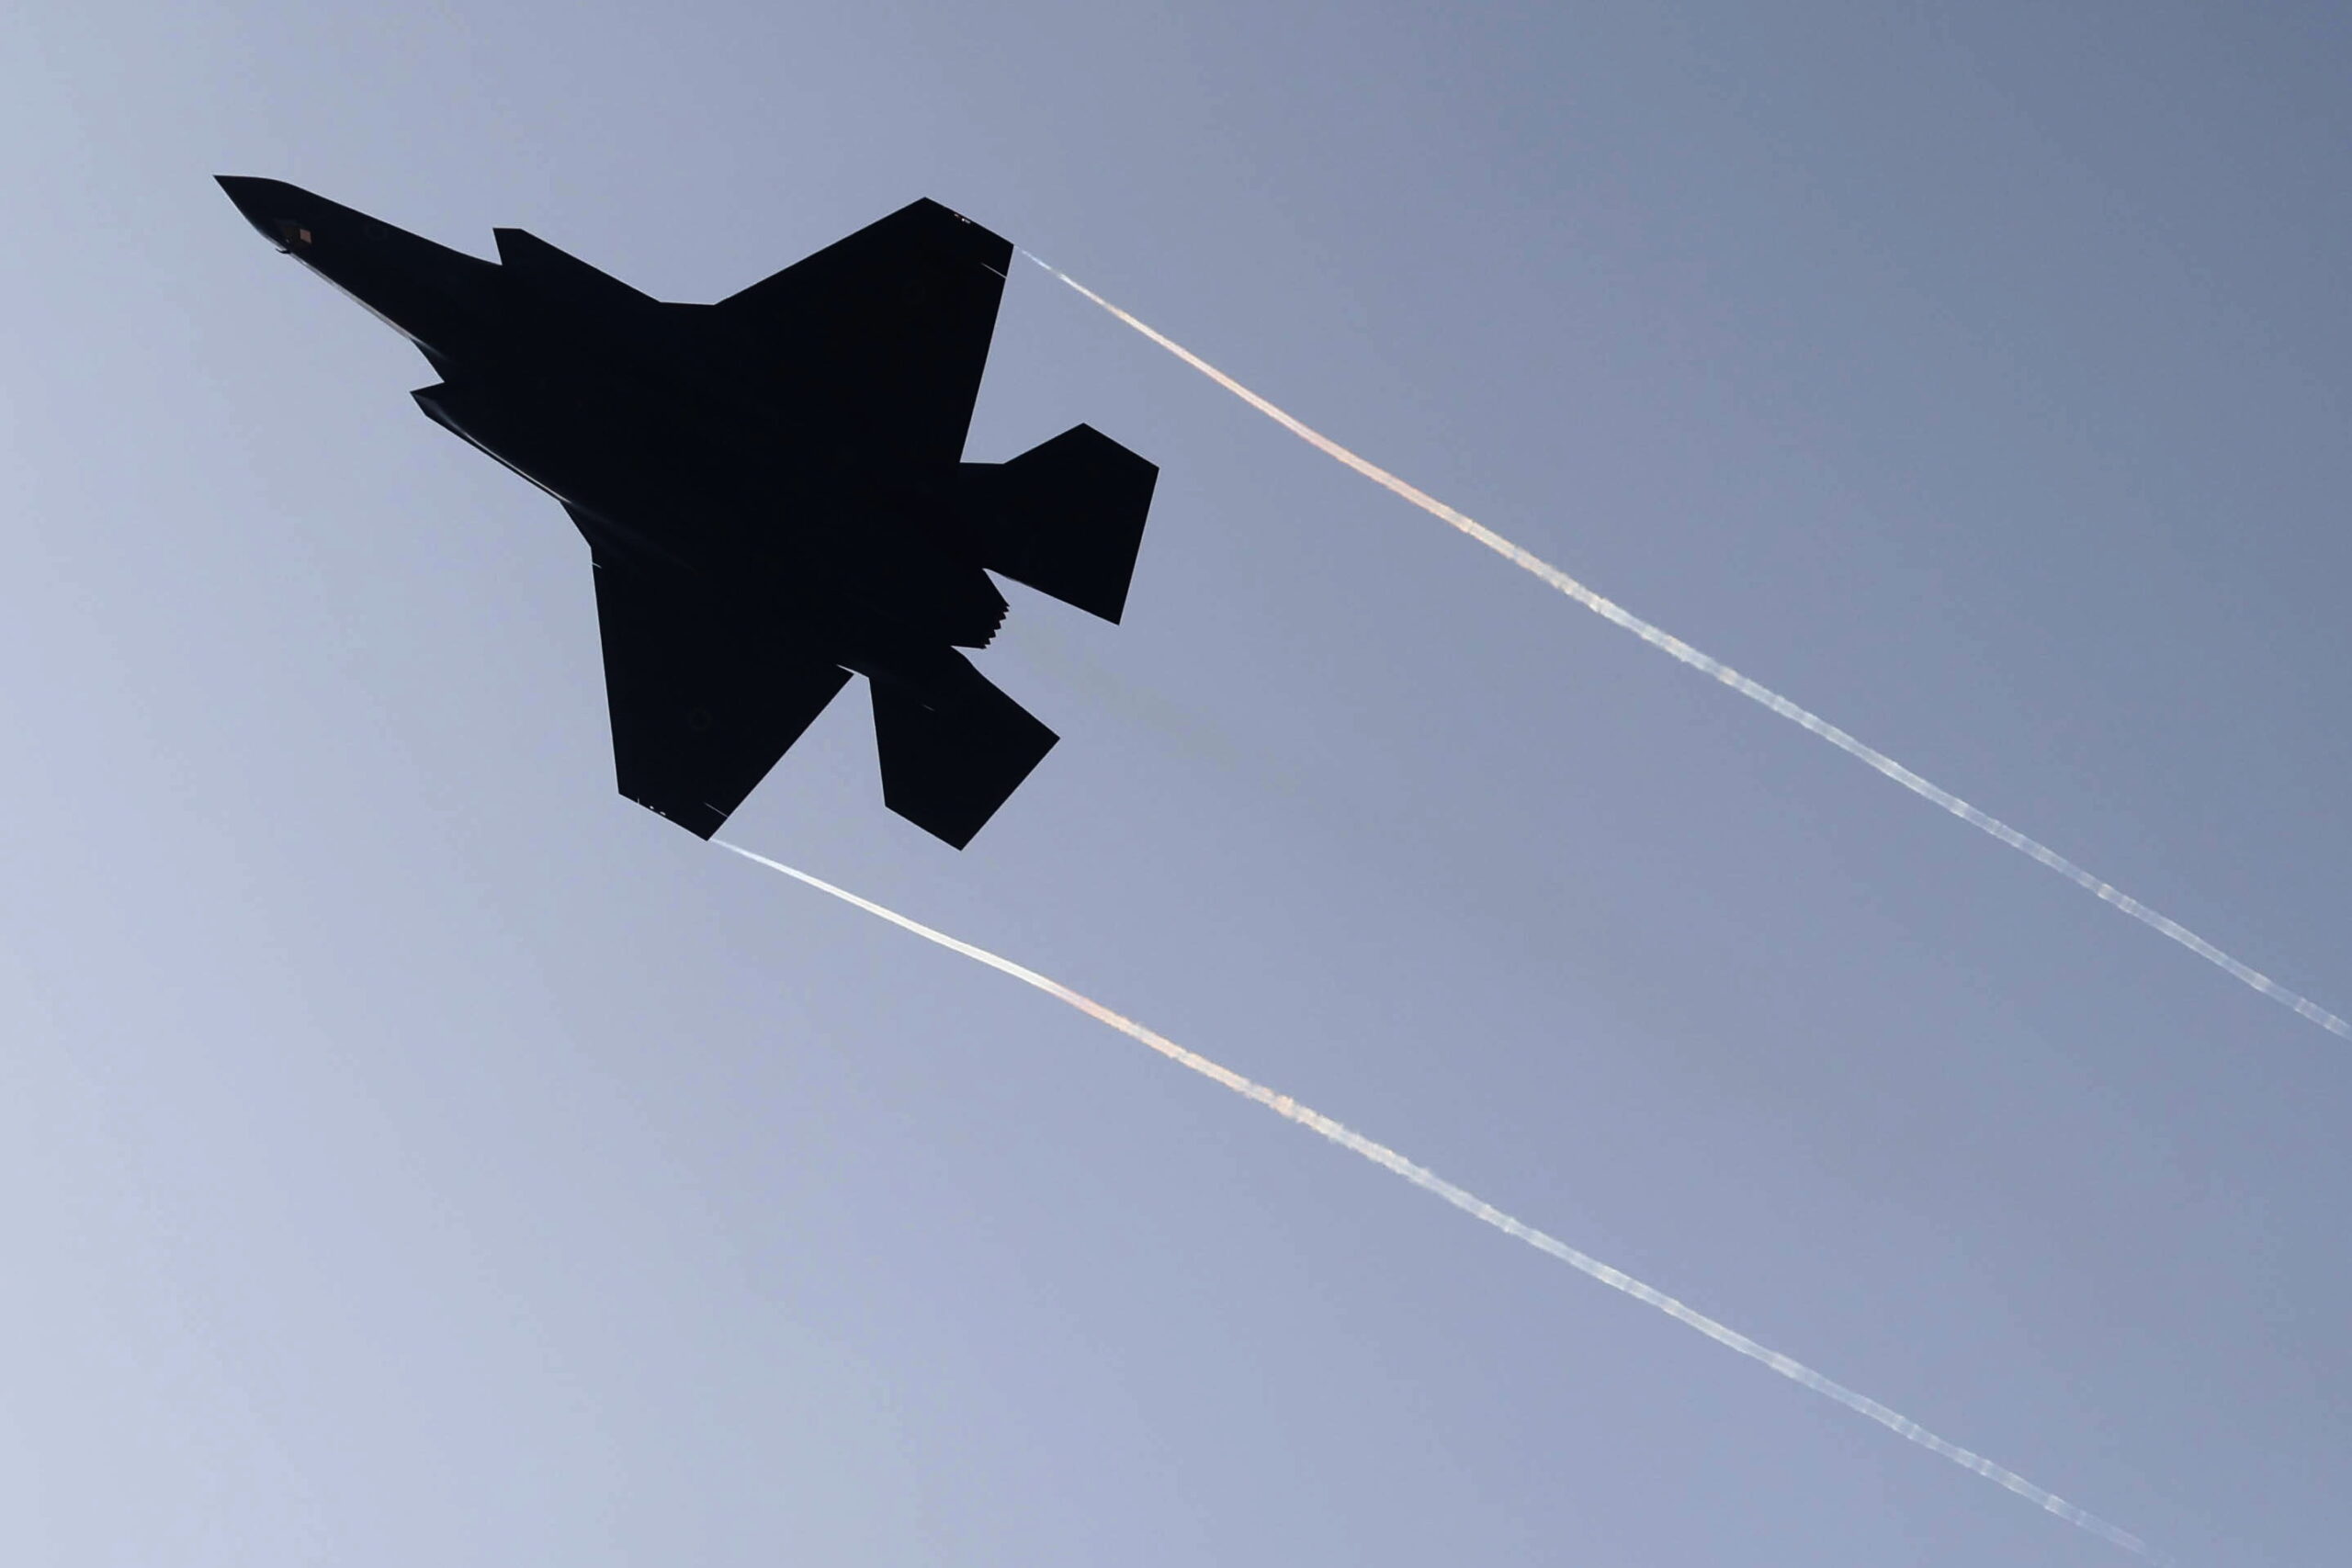 Φ. Καραϊωσηφίδης στο ΕΡΤNews: Εμβληματικός στόχος το Ισφαχάν – Οι Ισραηλινοί έχουν αγοράσει F-35 για να χτυπάνε και να φεύγουν ανενόχλητοι